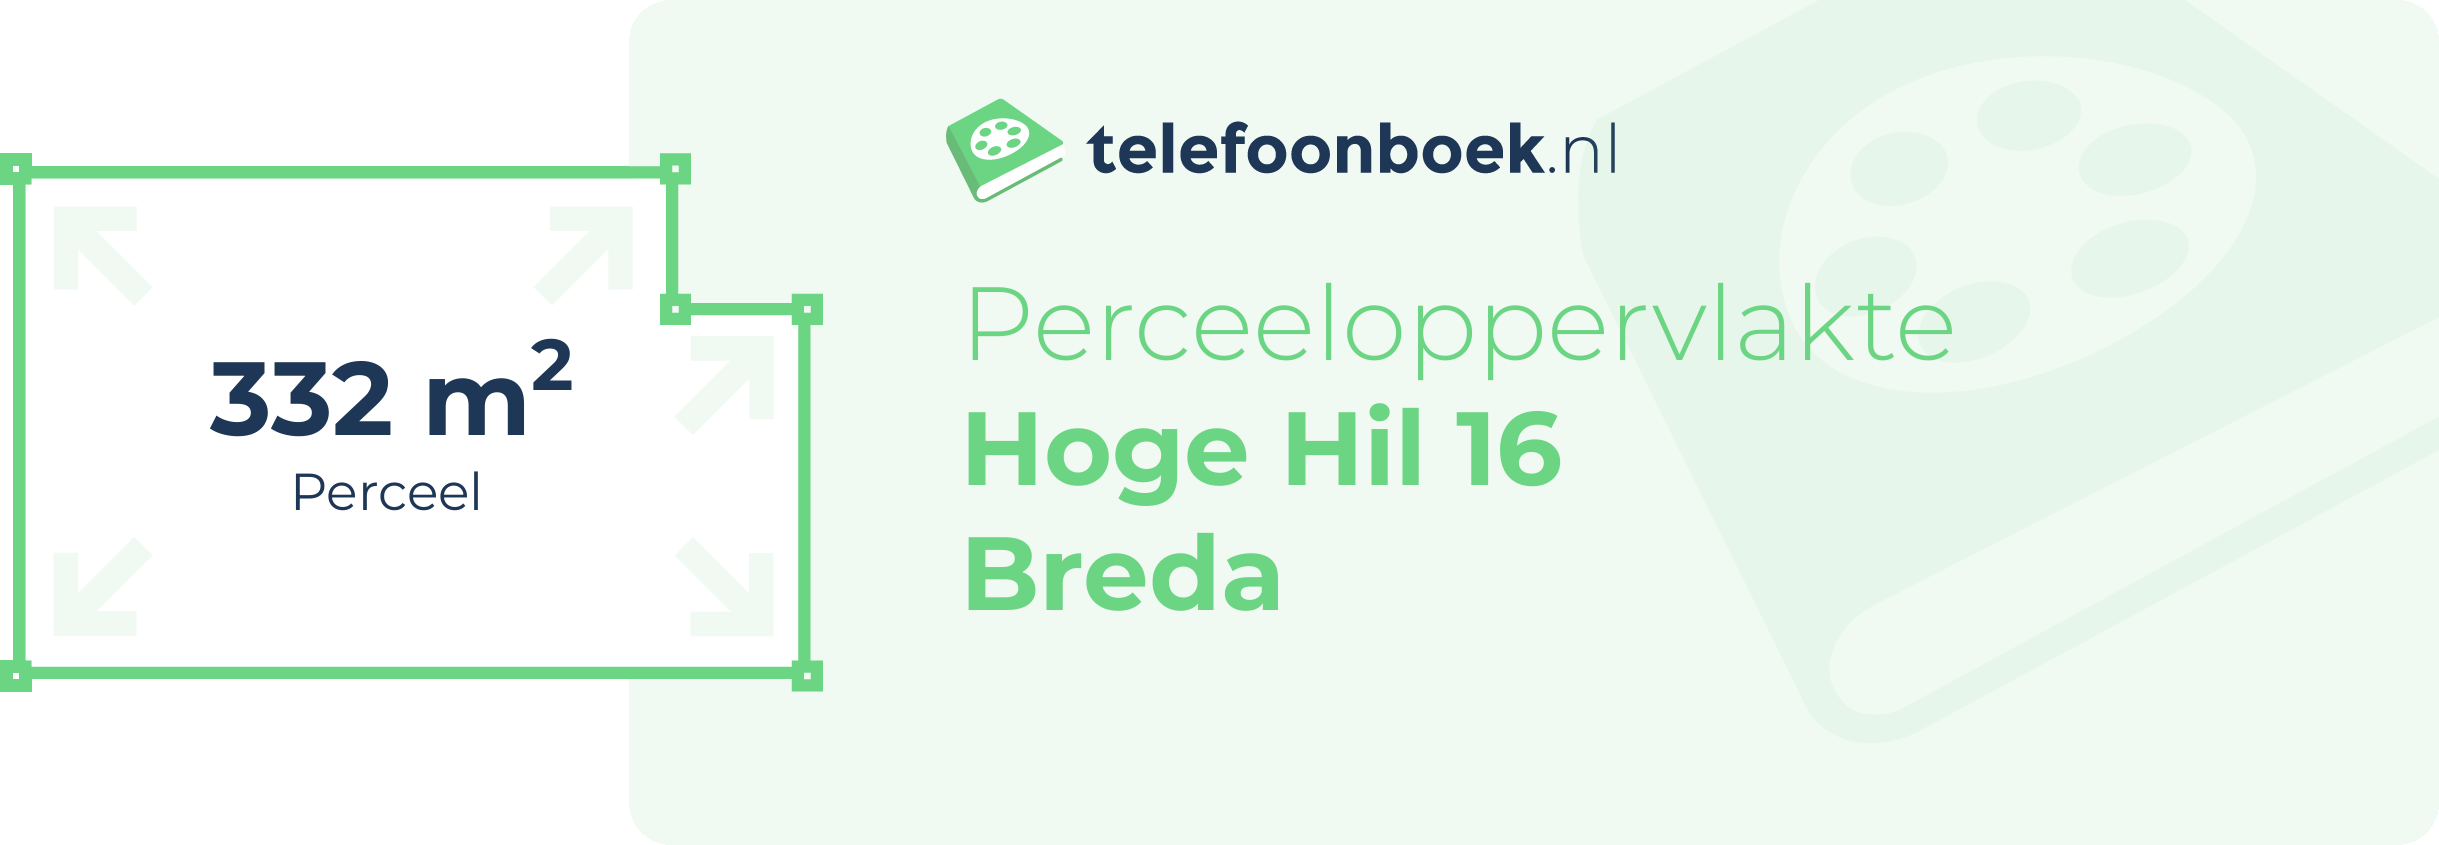 Perceeloppervlakte Hoge Hil 16 Breda